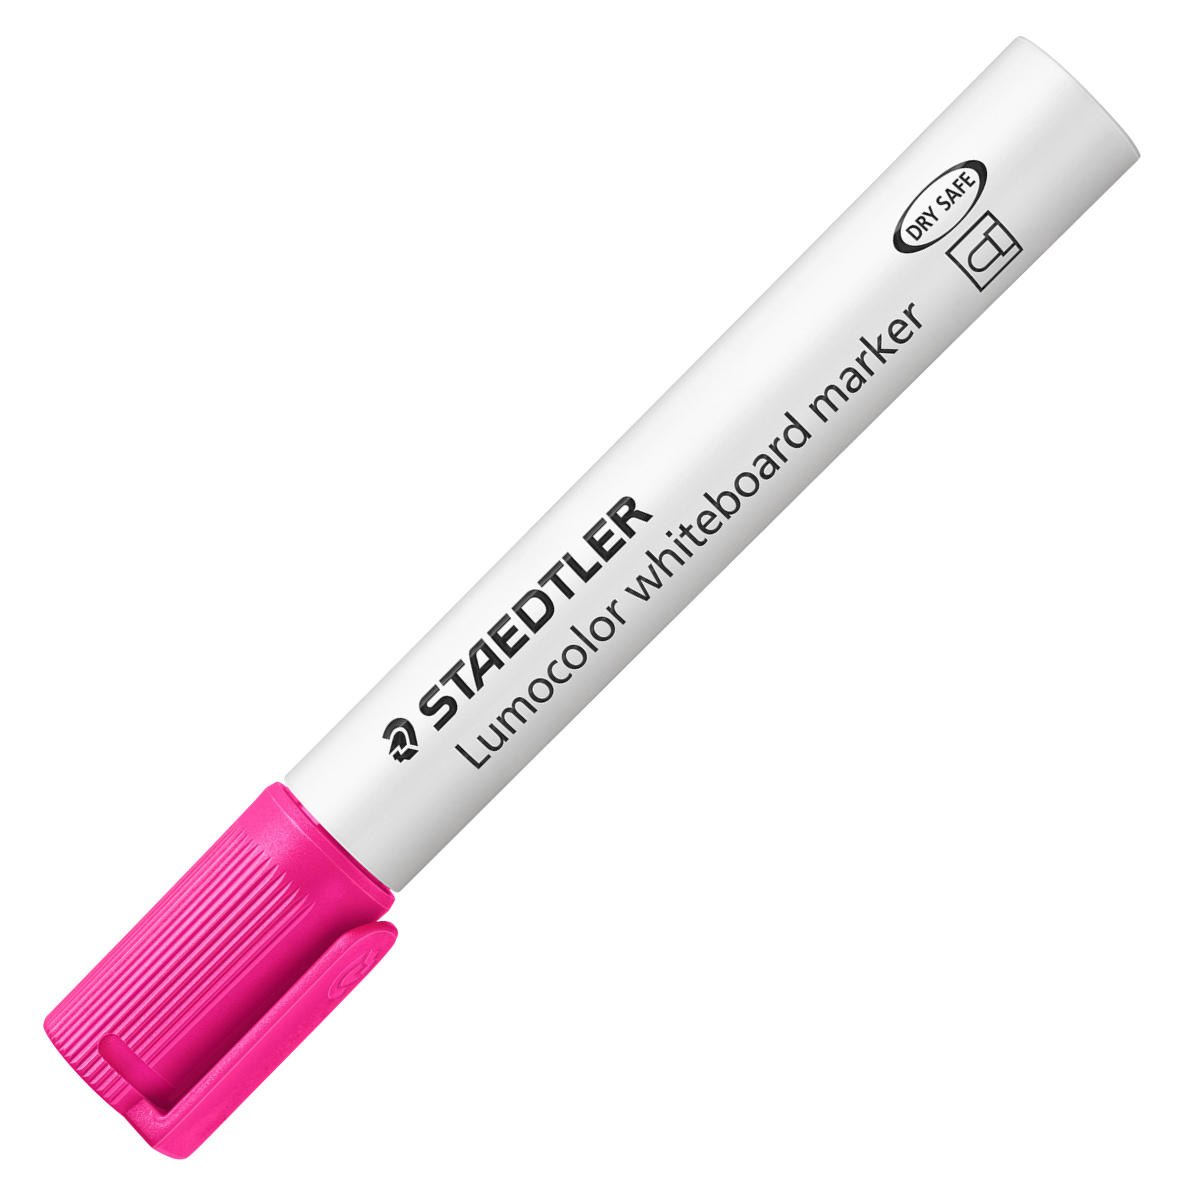 Staedtler Refill Station for Lumocolor Whiteboard Pen 